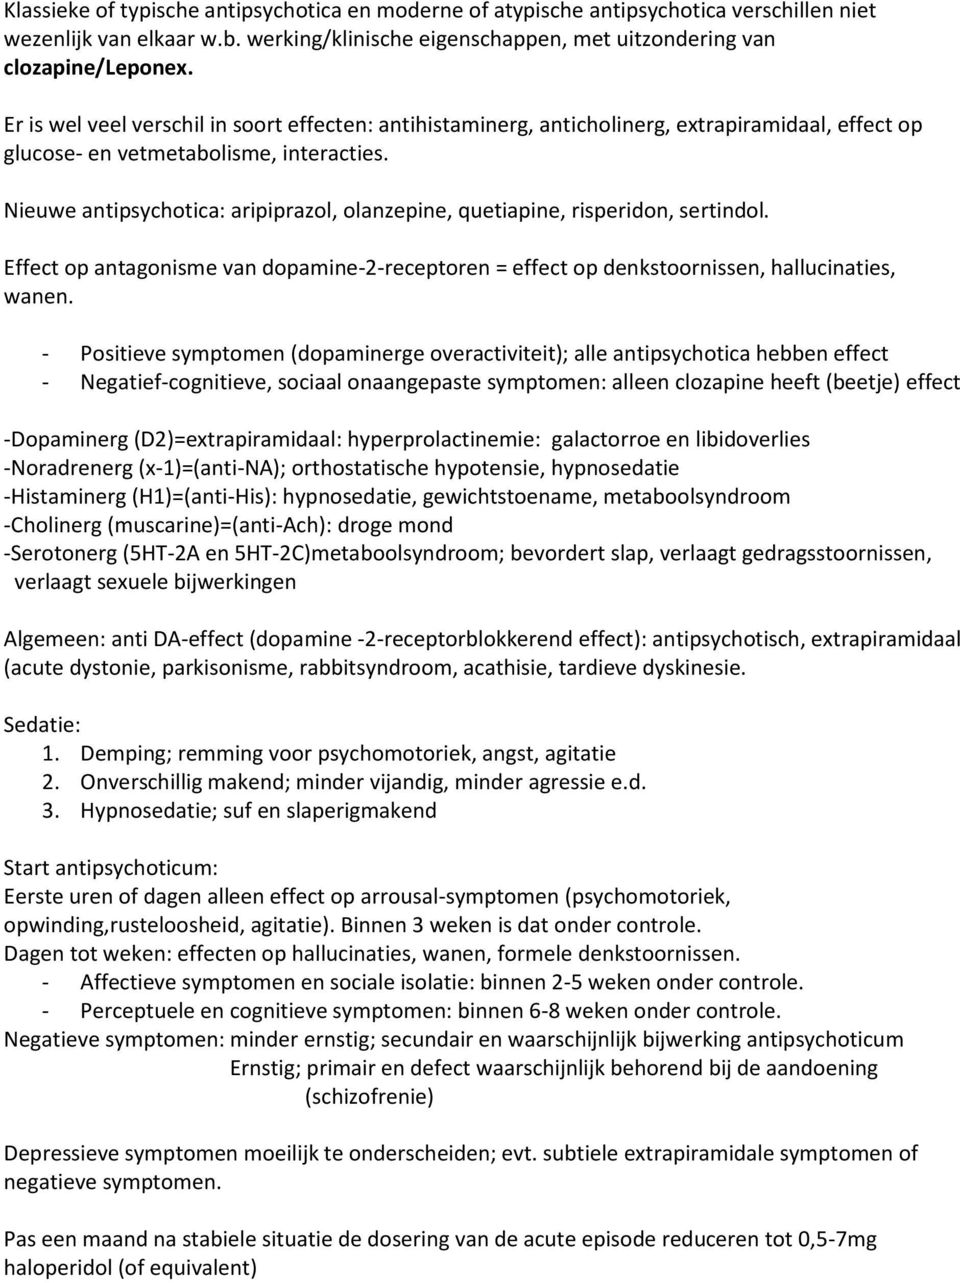 Nieuwe antipsychotica: aripiprazol, olanzepine, quetiapine, risperidon, sertindol. Effect op antagonisme van dopamine-2-receptoren = effect op denkstoornissen, hallucinaties, wanen.